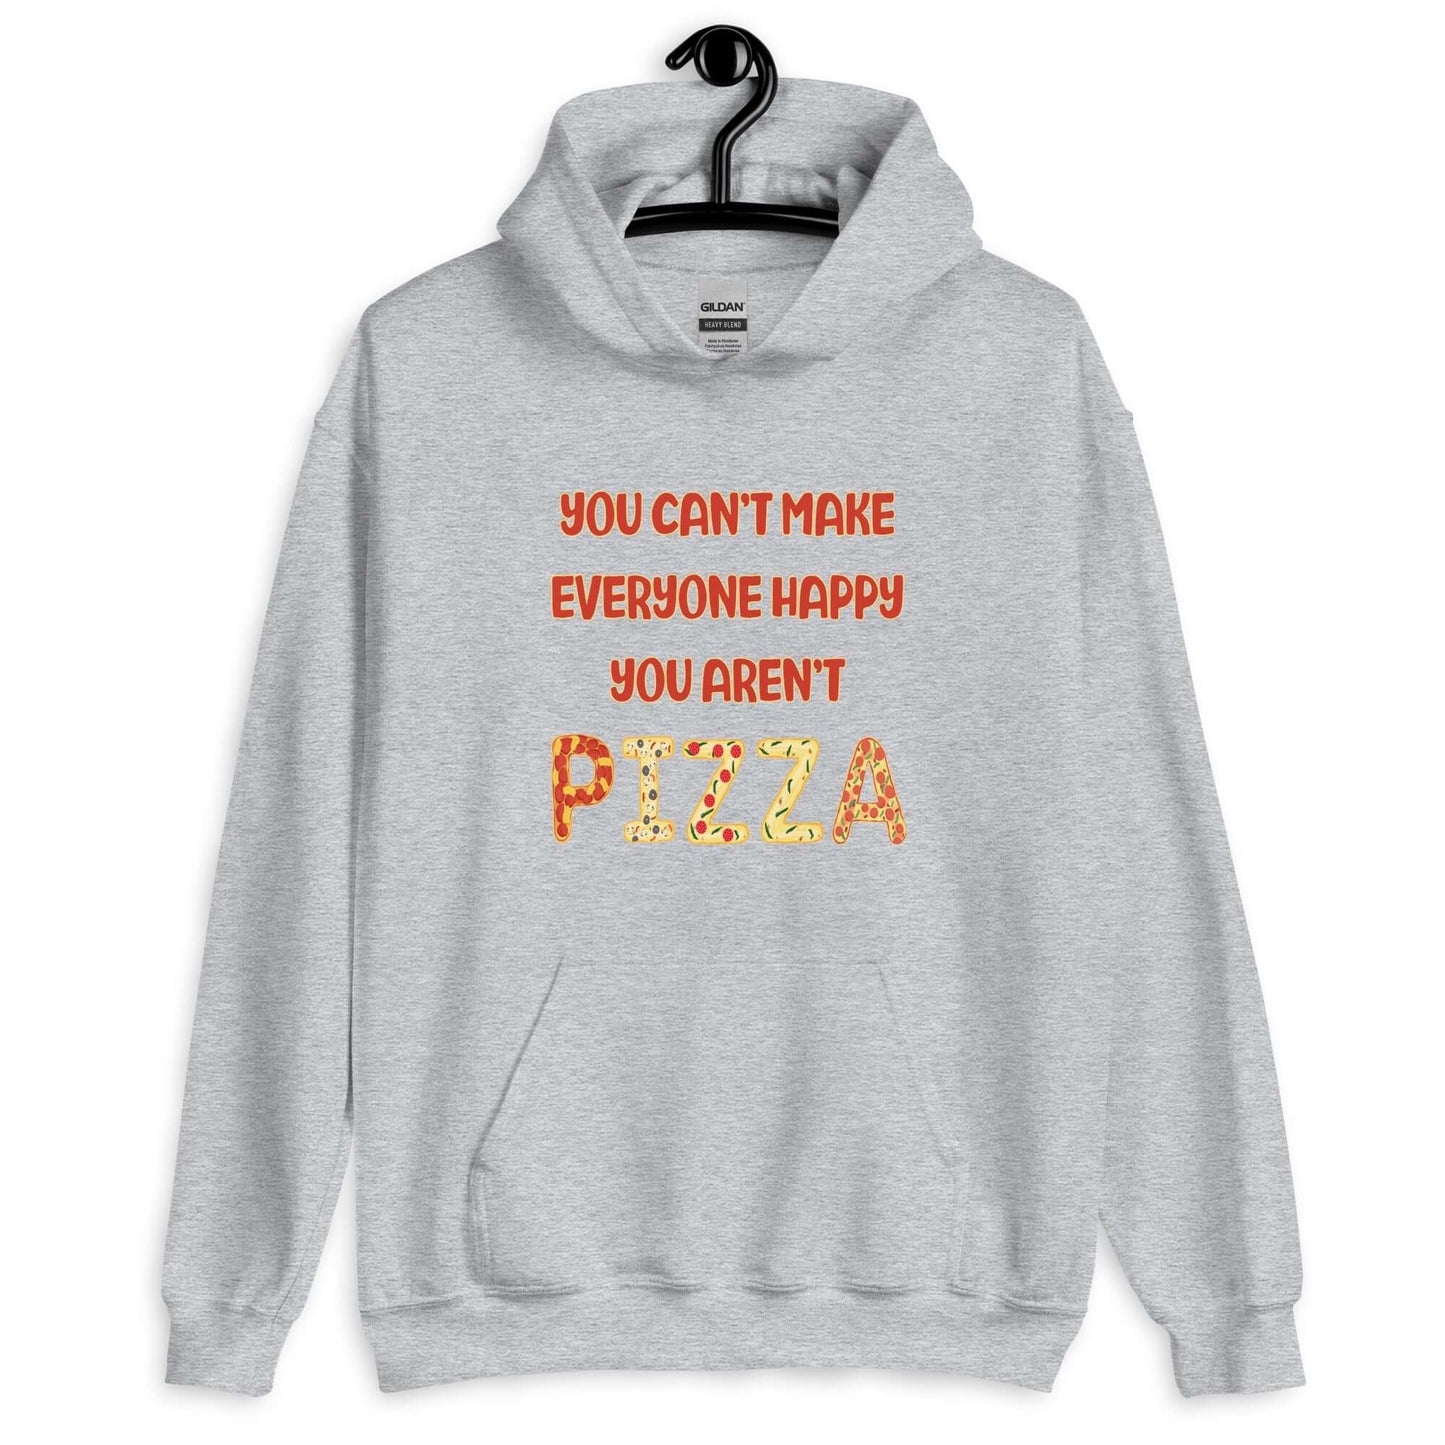 You aren't pizza funny hoodie sweatshirt